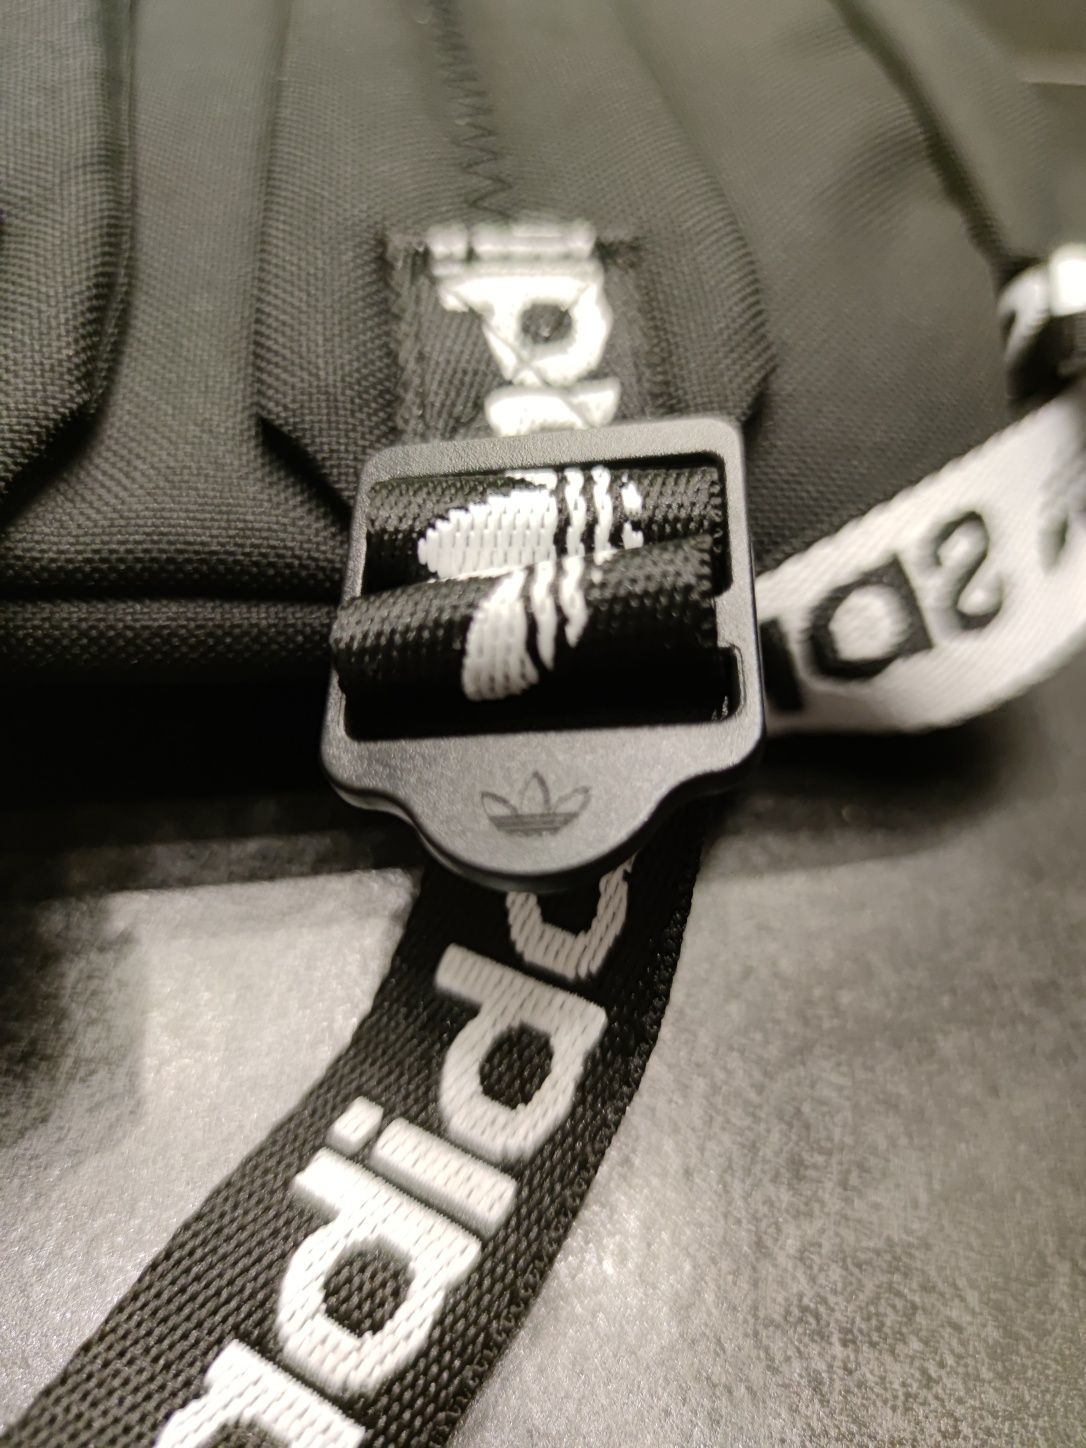 Plecak Adidas Trefoil z markowymi haftowanymi taśmami. Nowy 50złTANIEJ